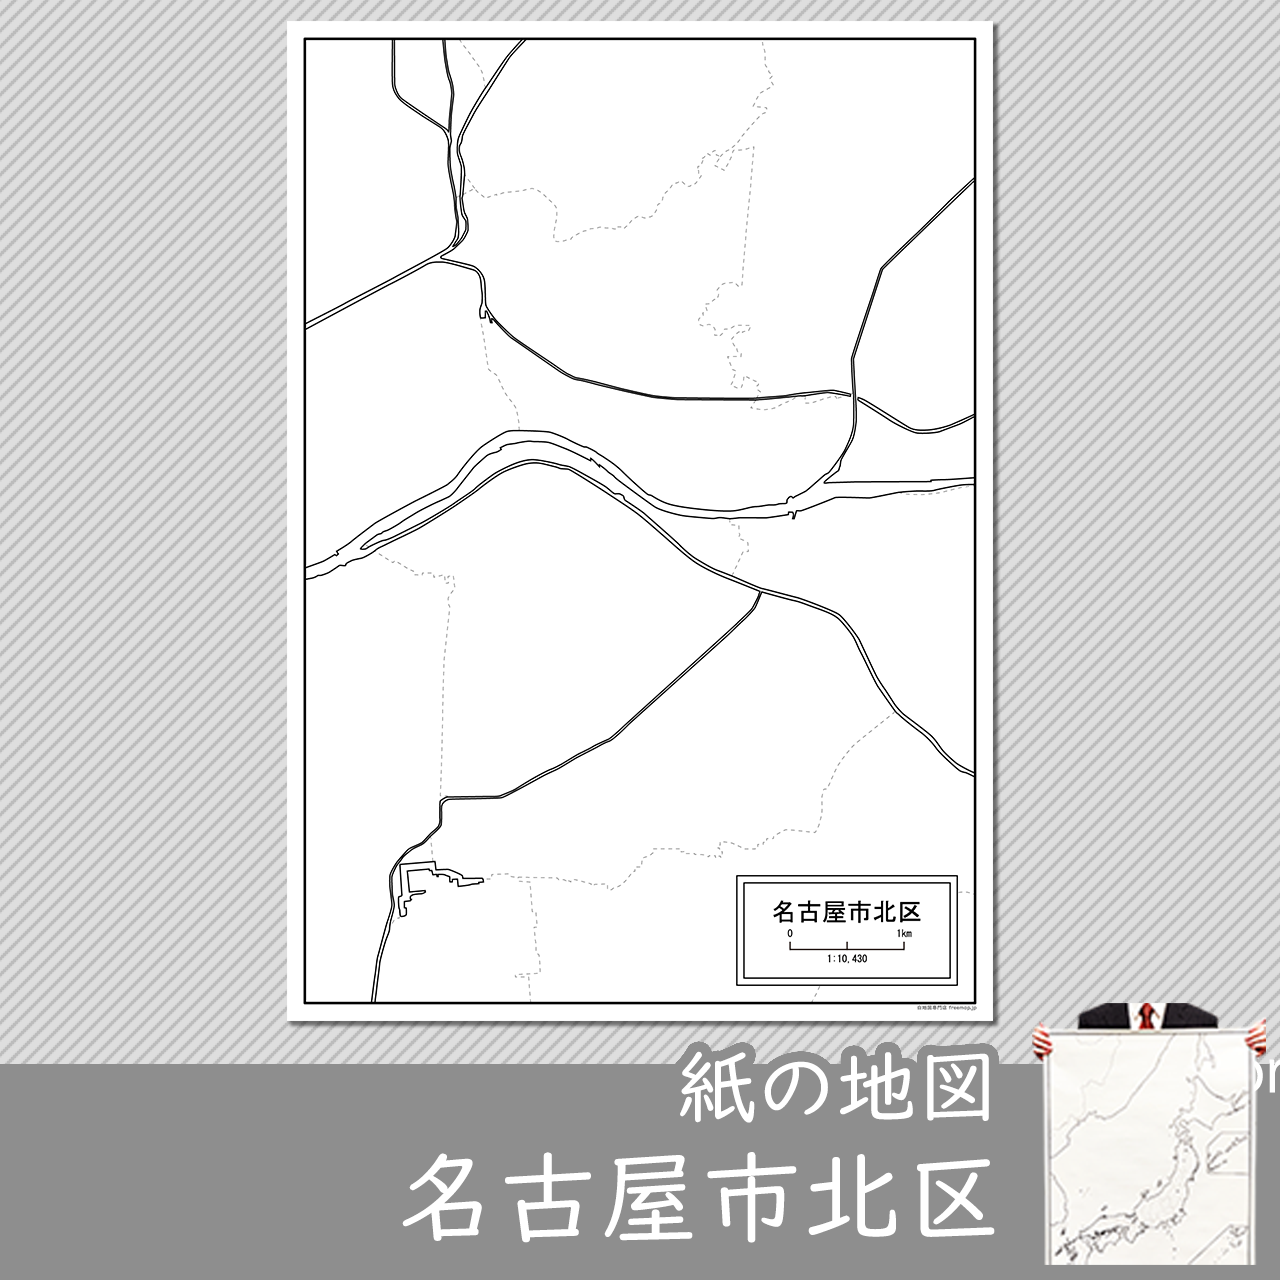 名古屋市北区の紙の白地図のサムネイル